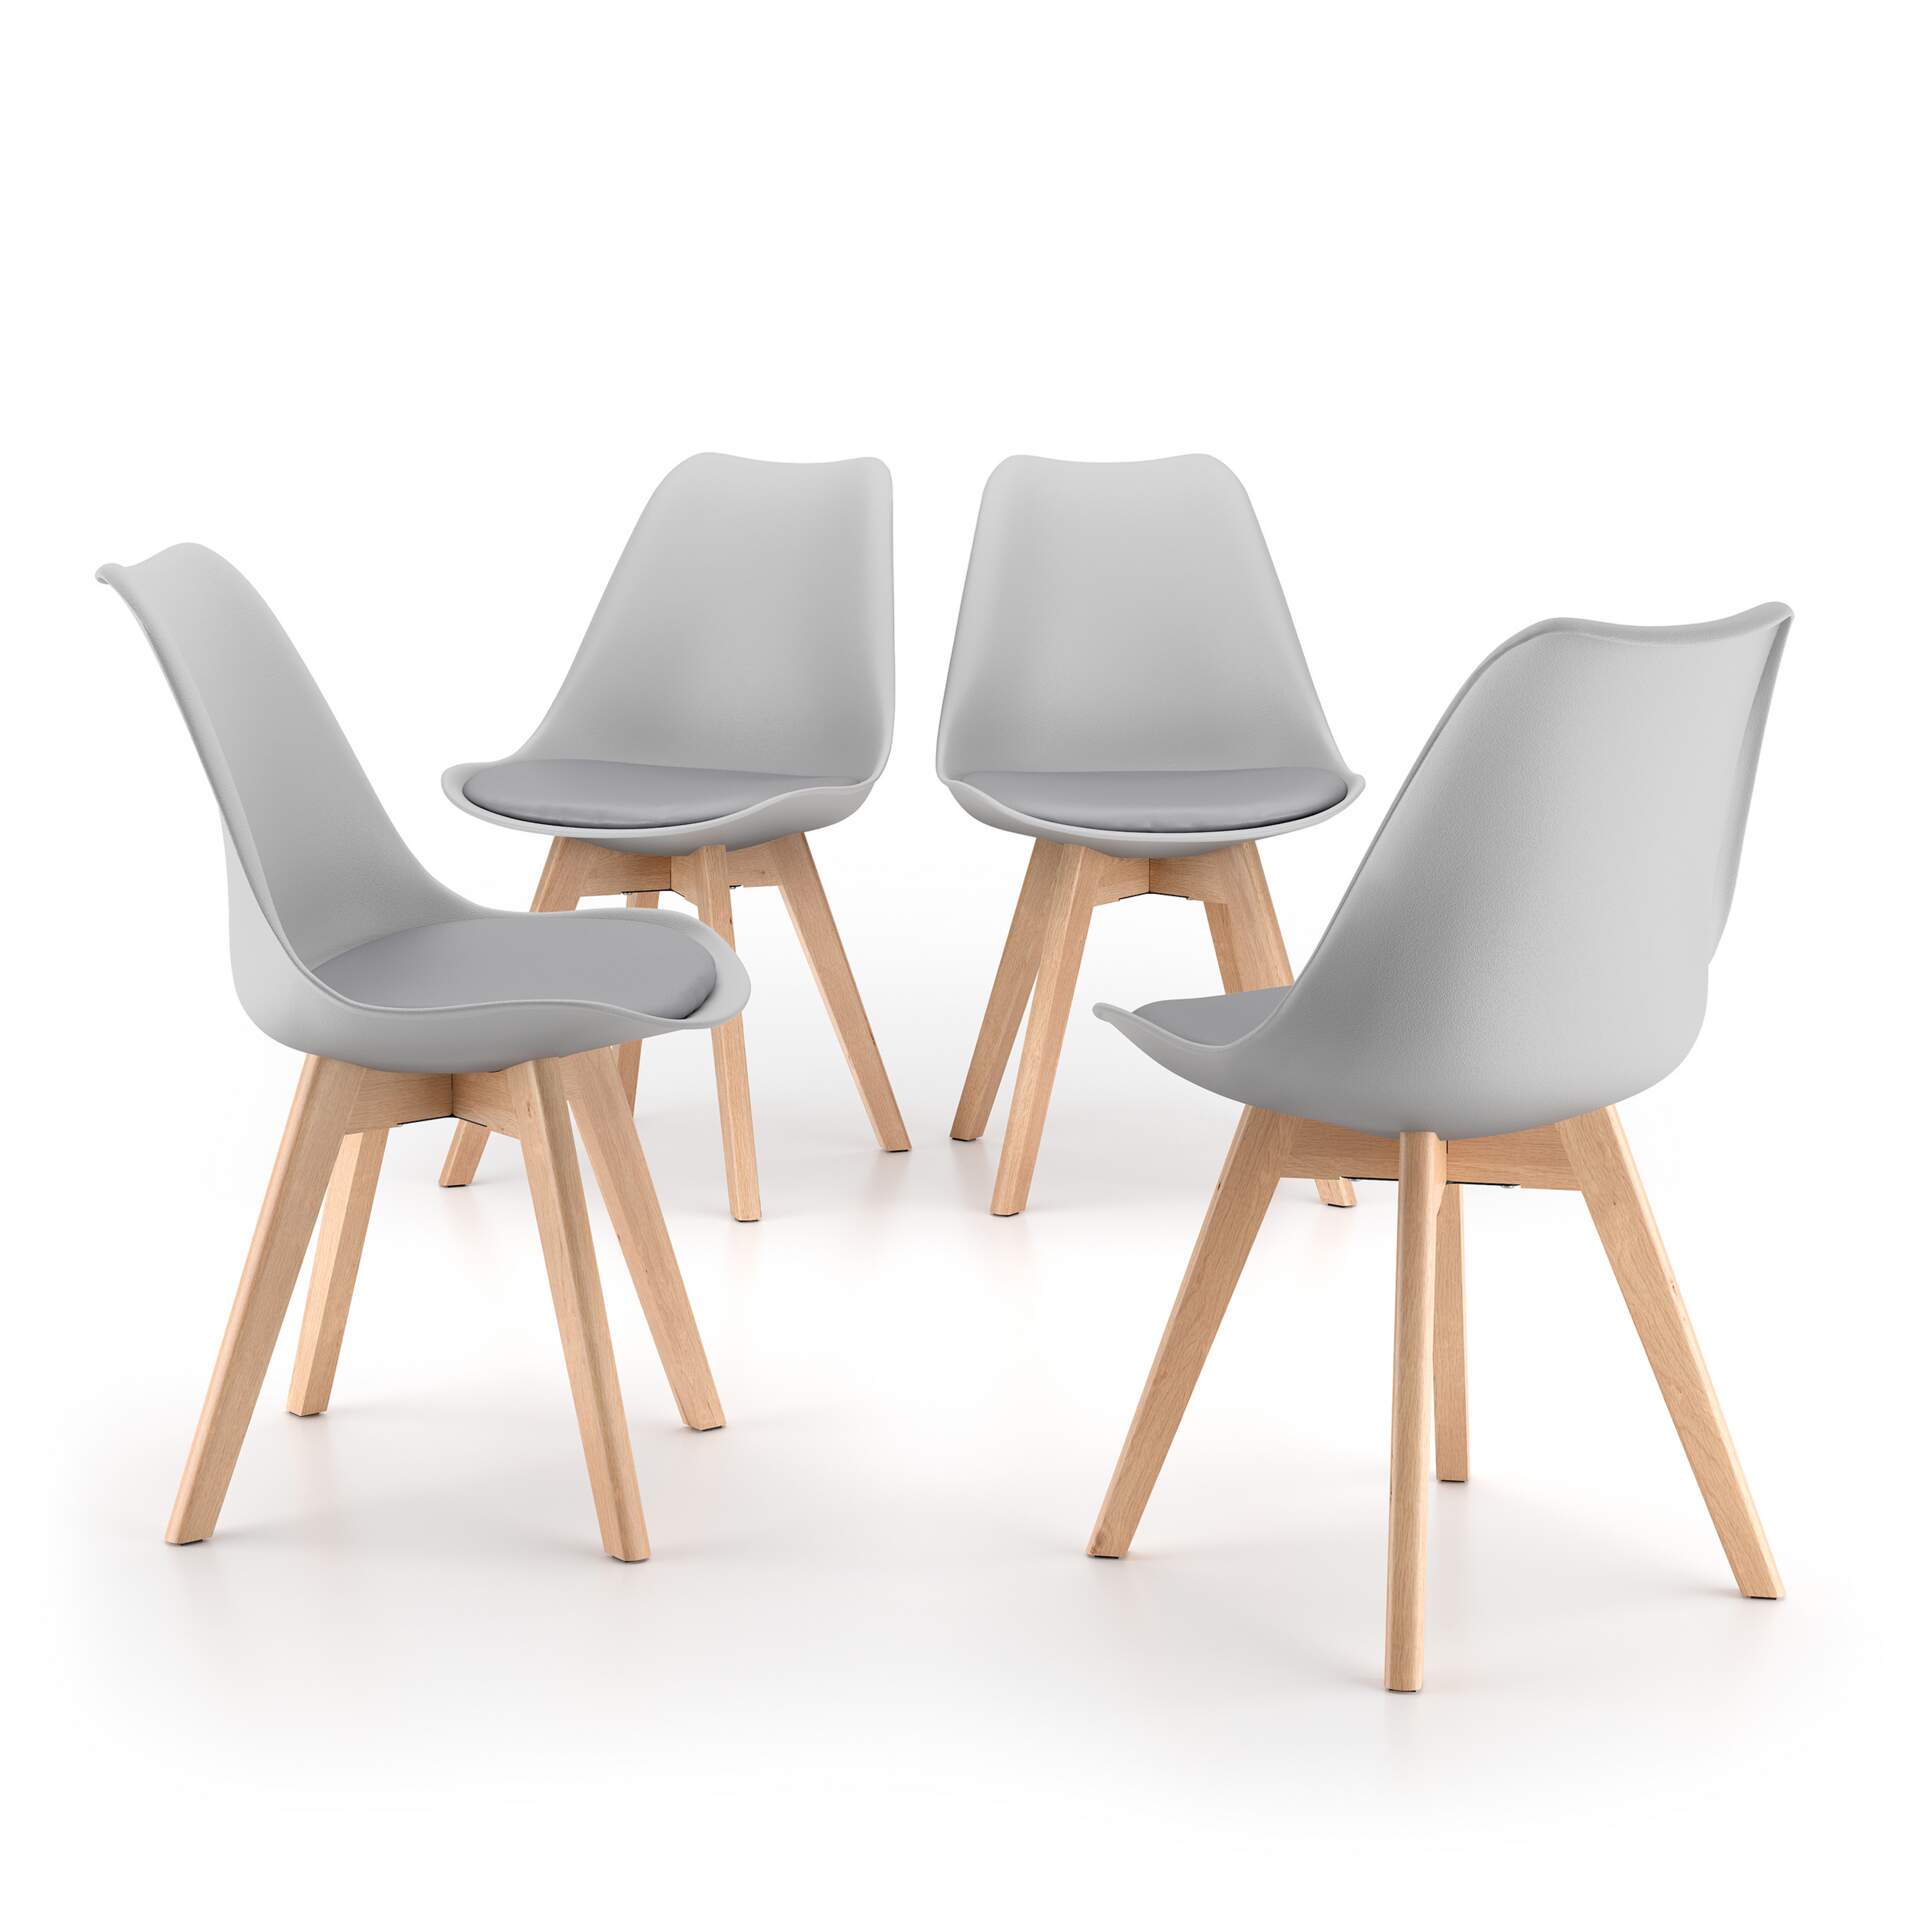 Mobili Fiver Set de 4 sillas en estilo nórdico Greta, gris